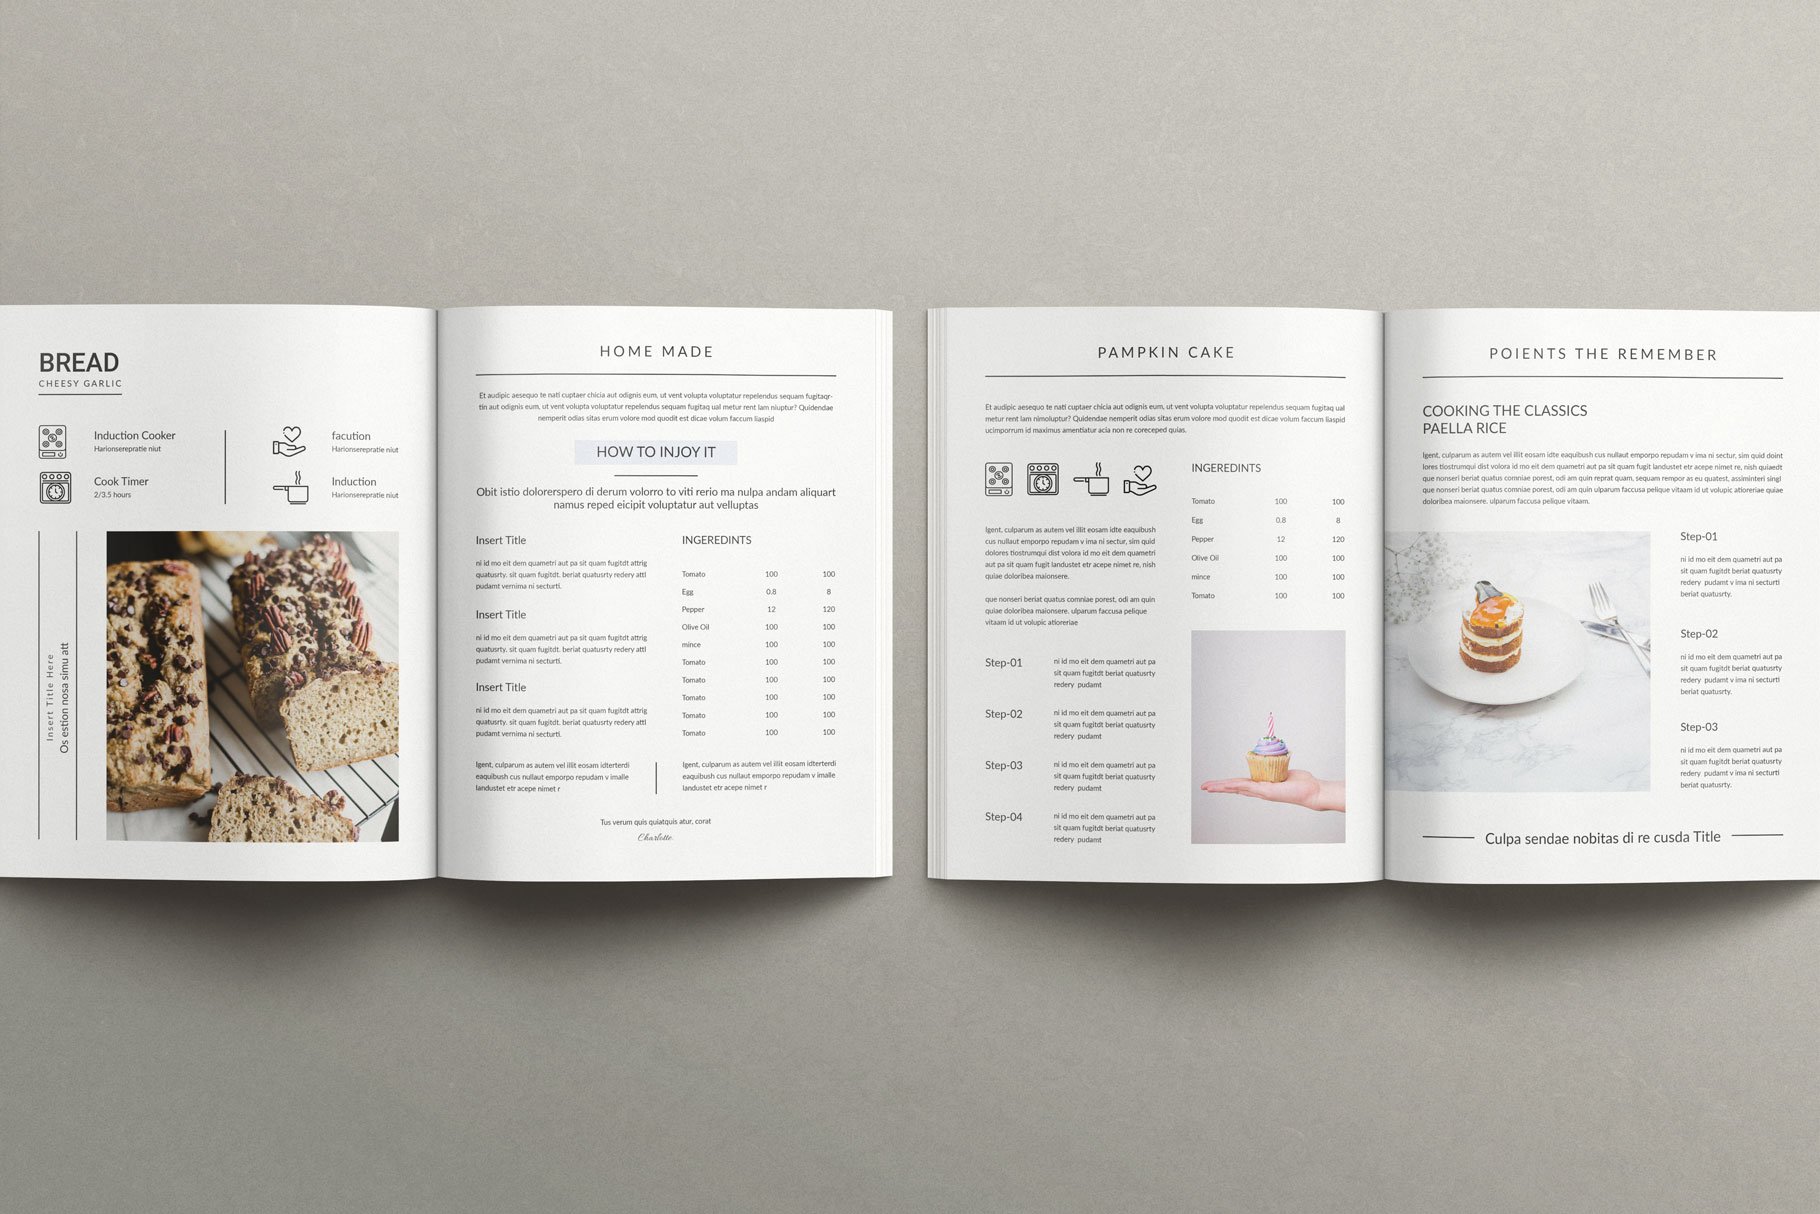 Cookbook Recipe Book Template 2 - Design Cuts